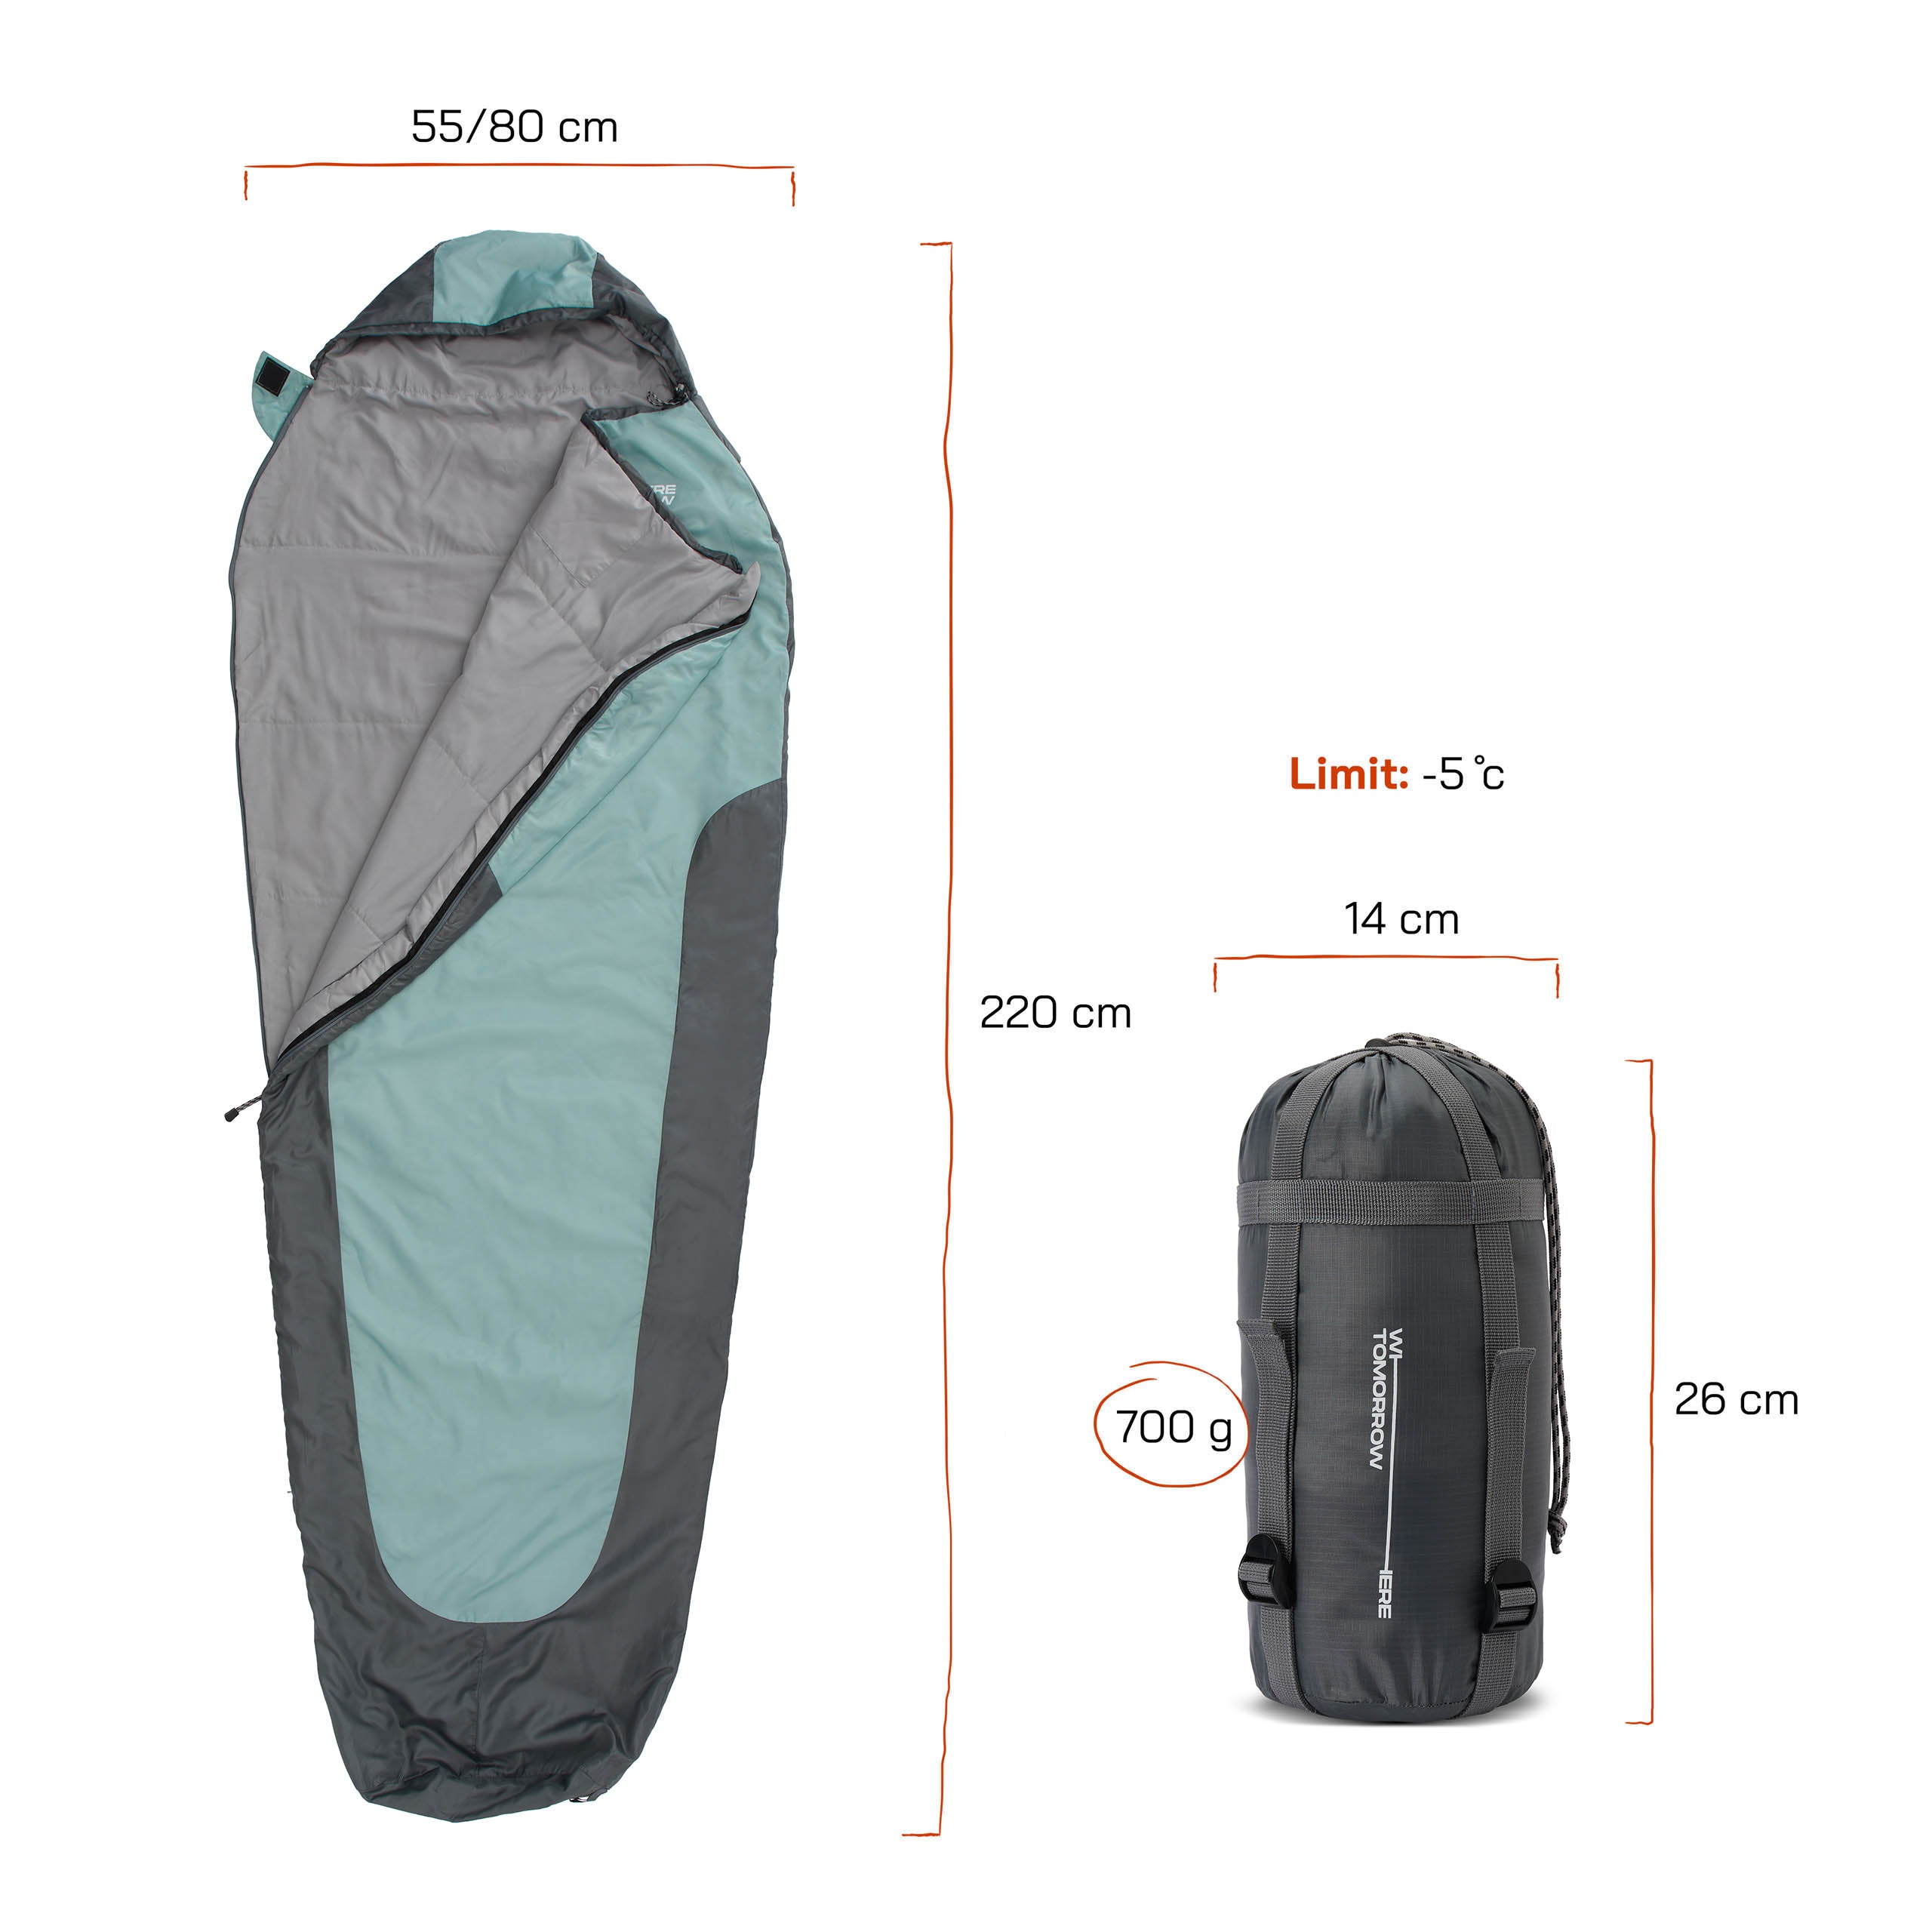 Schlafsack Small & Light - Mumienschlafsack mit Tasche - 220 x 80 x 50 cm - Hellblau-Grau